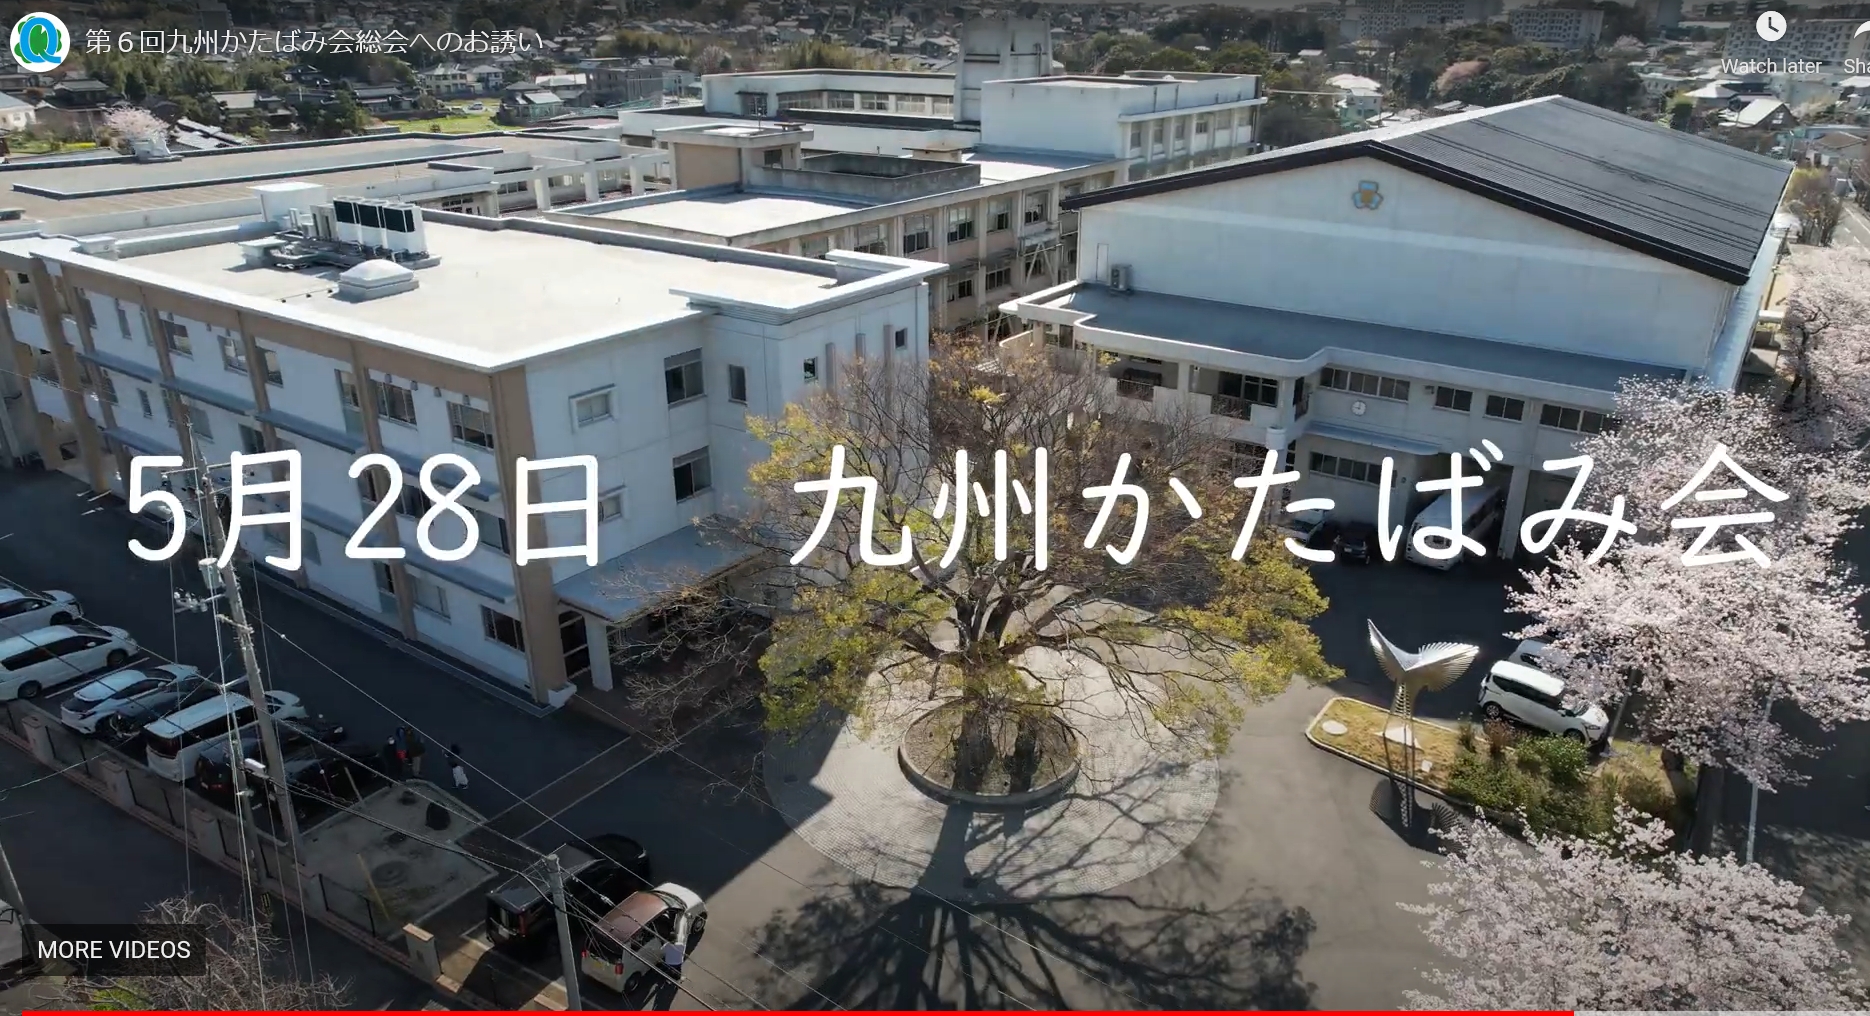 第6回九州かたばみ会のPR動画のご案内のイメージ